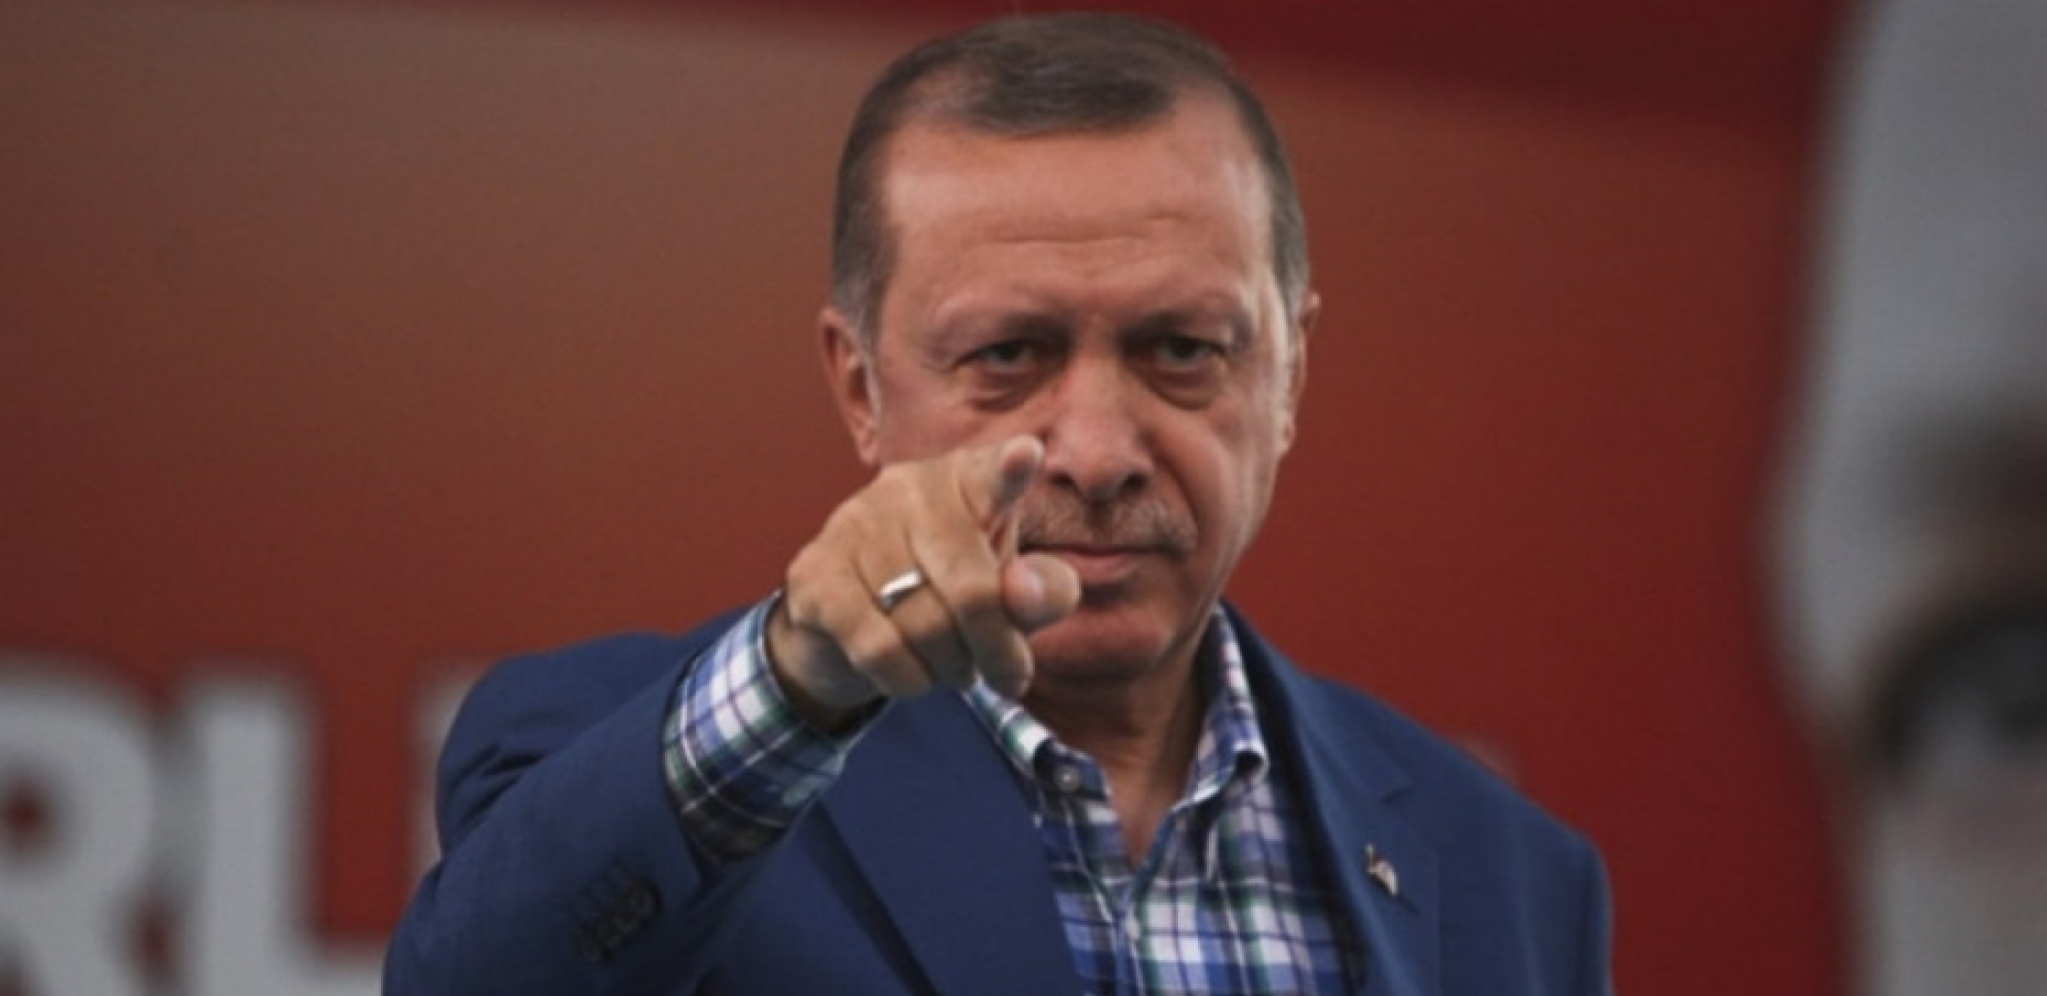 ŠOK ZA ALBANCE Erdogan je izneveren i traži da hitno ispune njegov nalog!